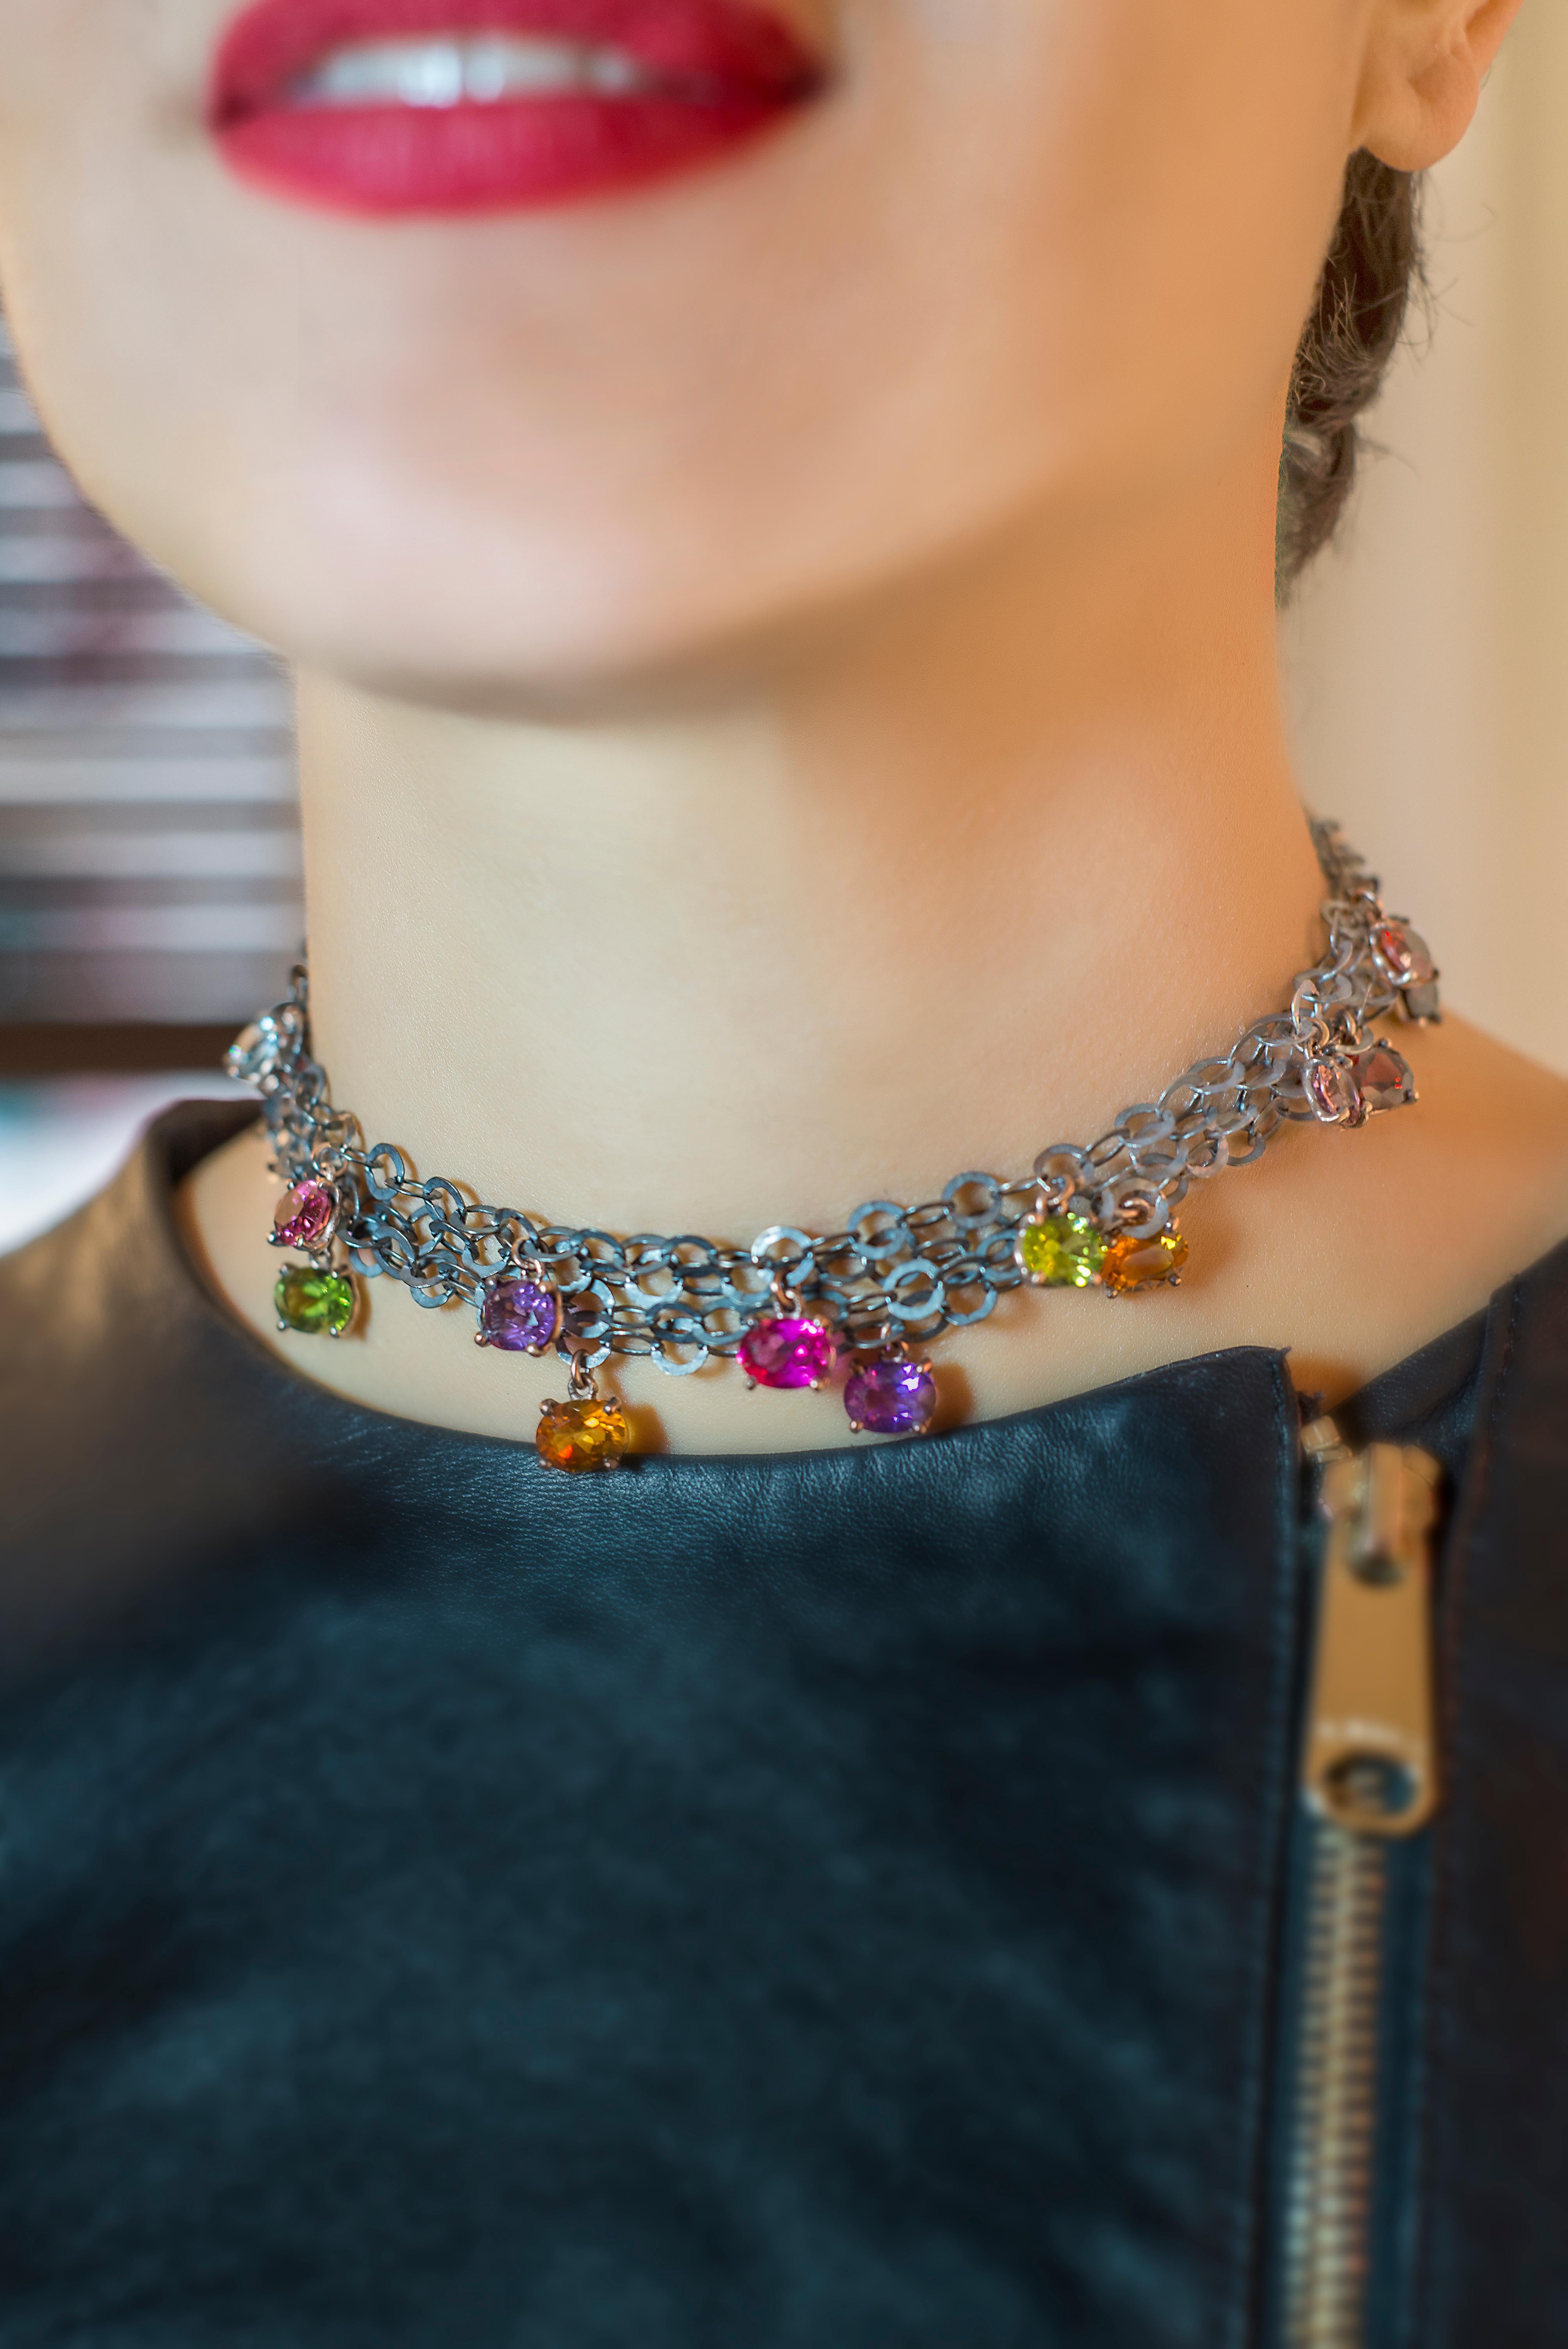 Rossella Ugolini Design atemberaubende Halskette ist ein wahres Kunstwerk, handgefertigt in Italien 
Die brünierte Sterling-Silberkette passt perfekt zu den farbenfrohen Steinen, darunter Amethyst, Turmalin, Rubellit, Iolith, Aquamarin, Topas,